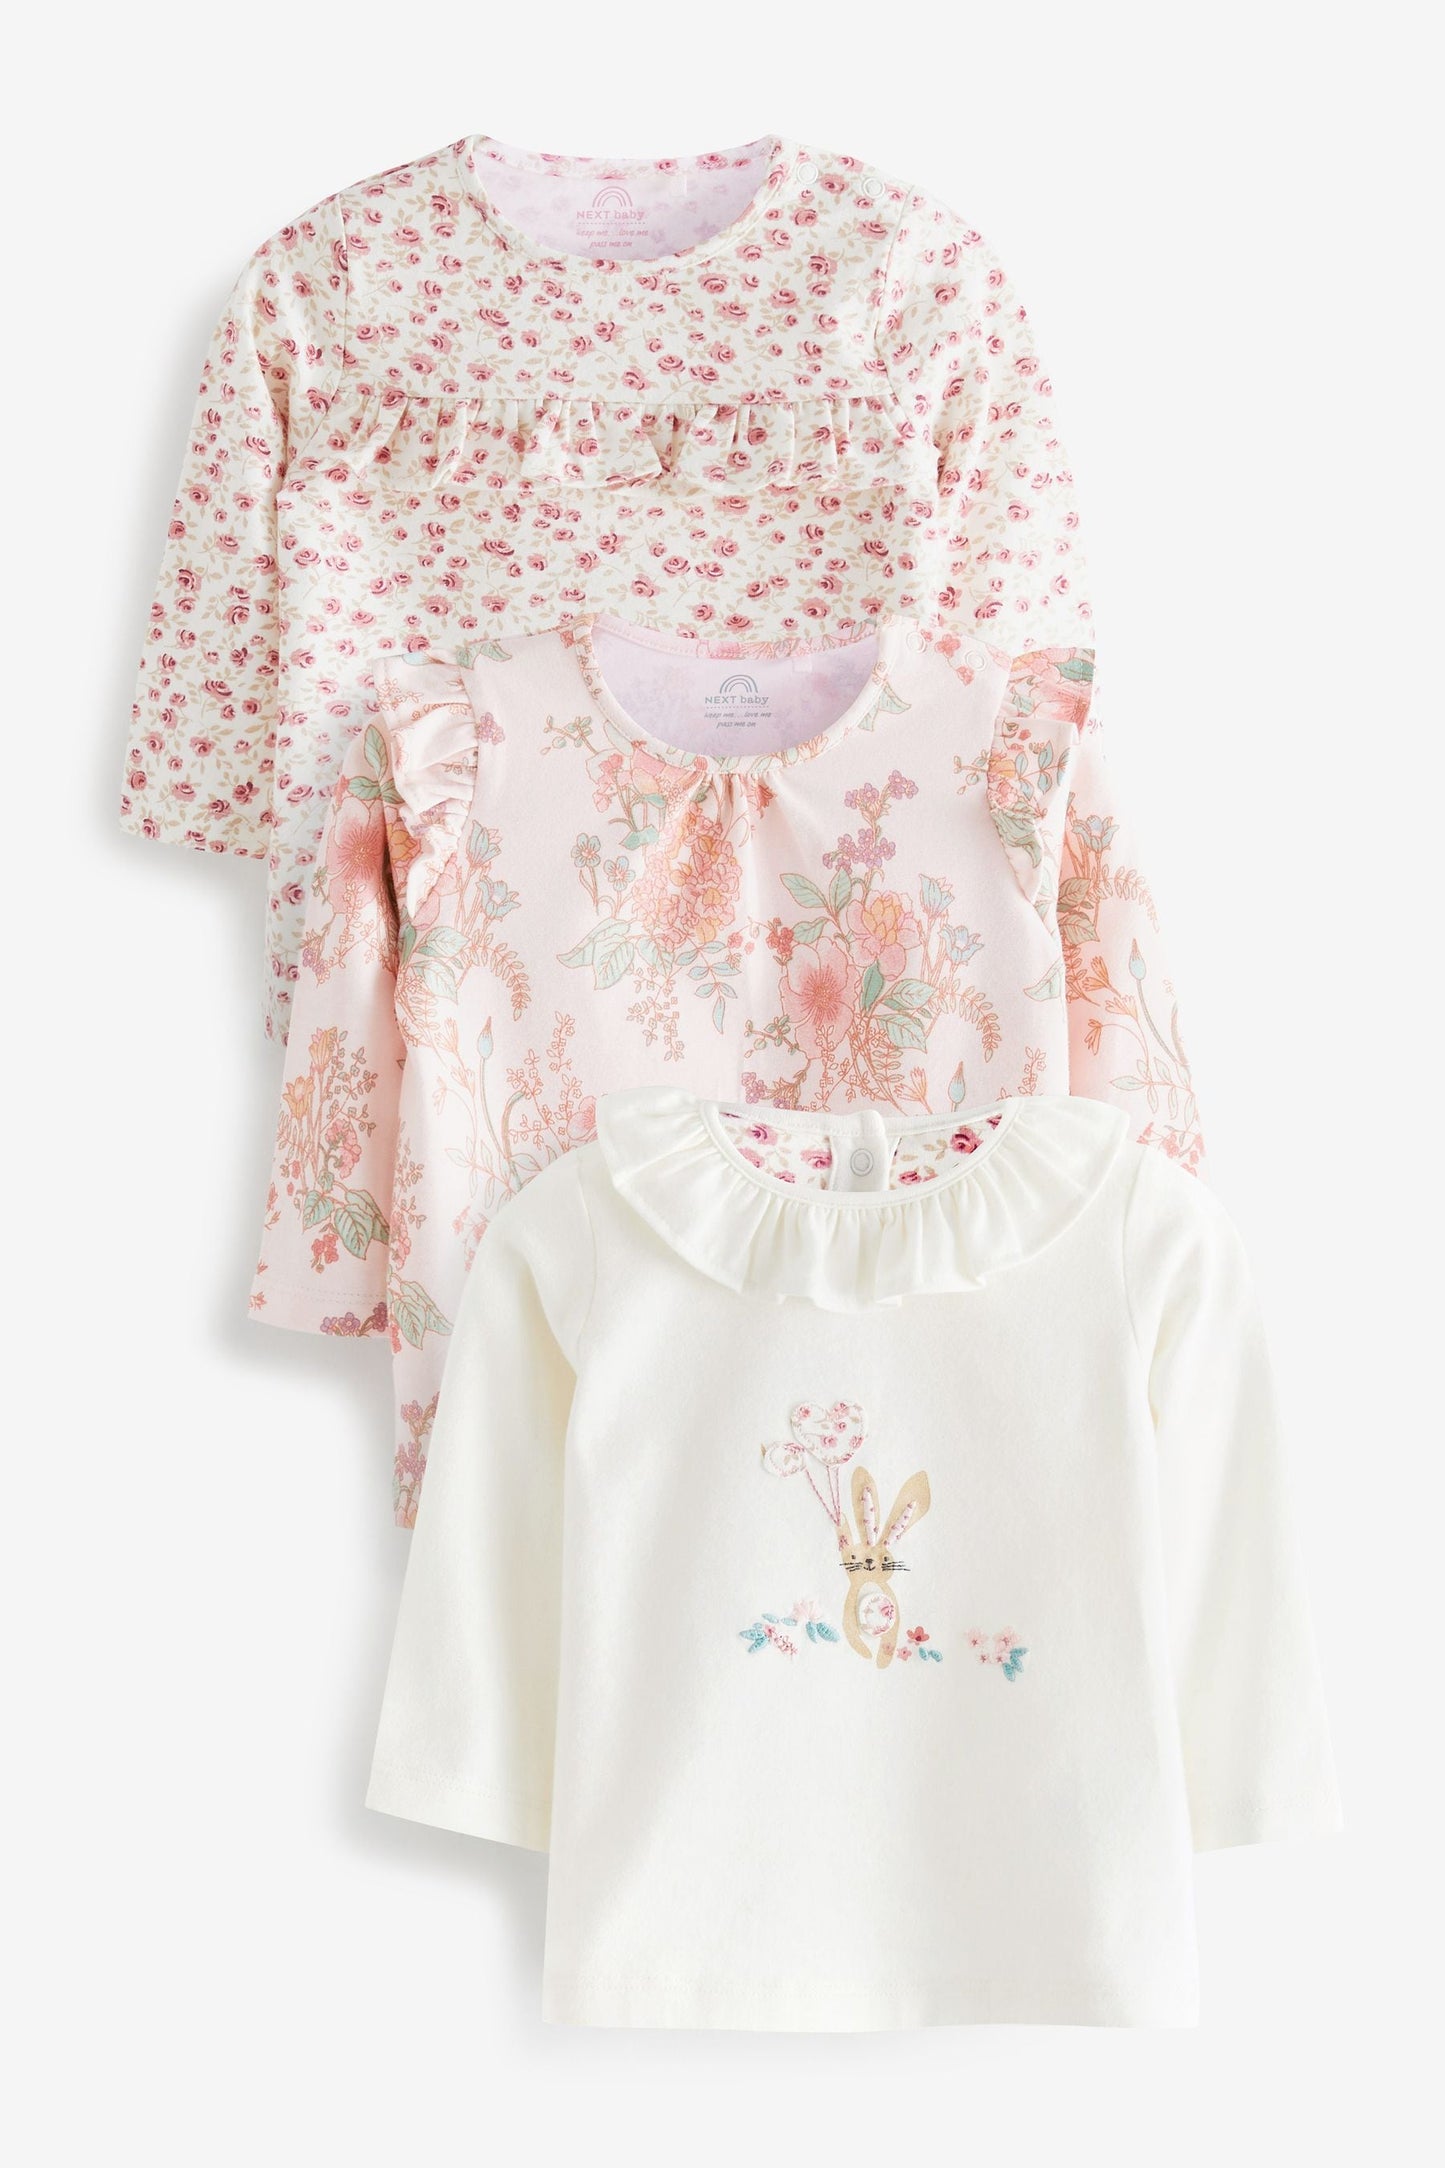 |BabyGirl| Conjunto de Camisetas Manga Longa - Kit 3 peças - Coelhinho Rosa/Floral - (0meses-2anos)